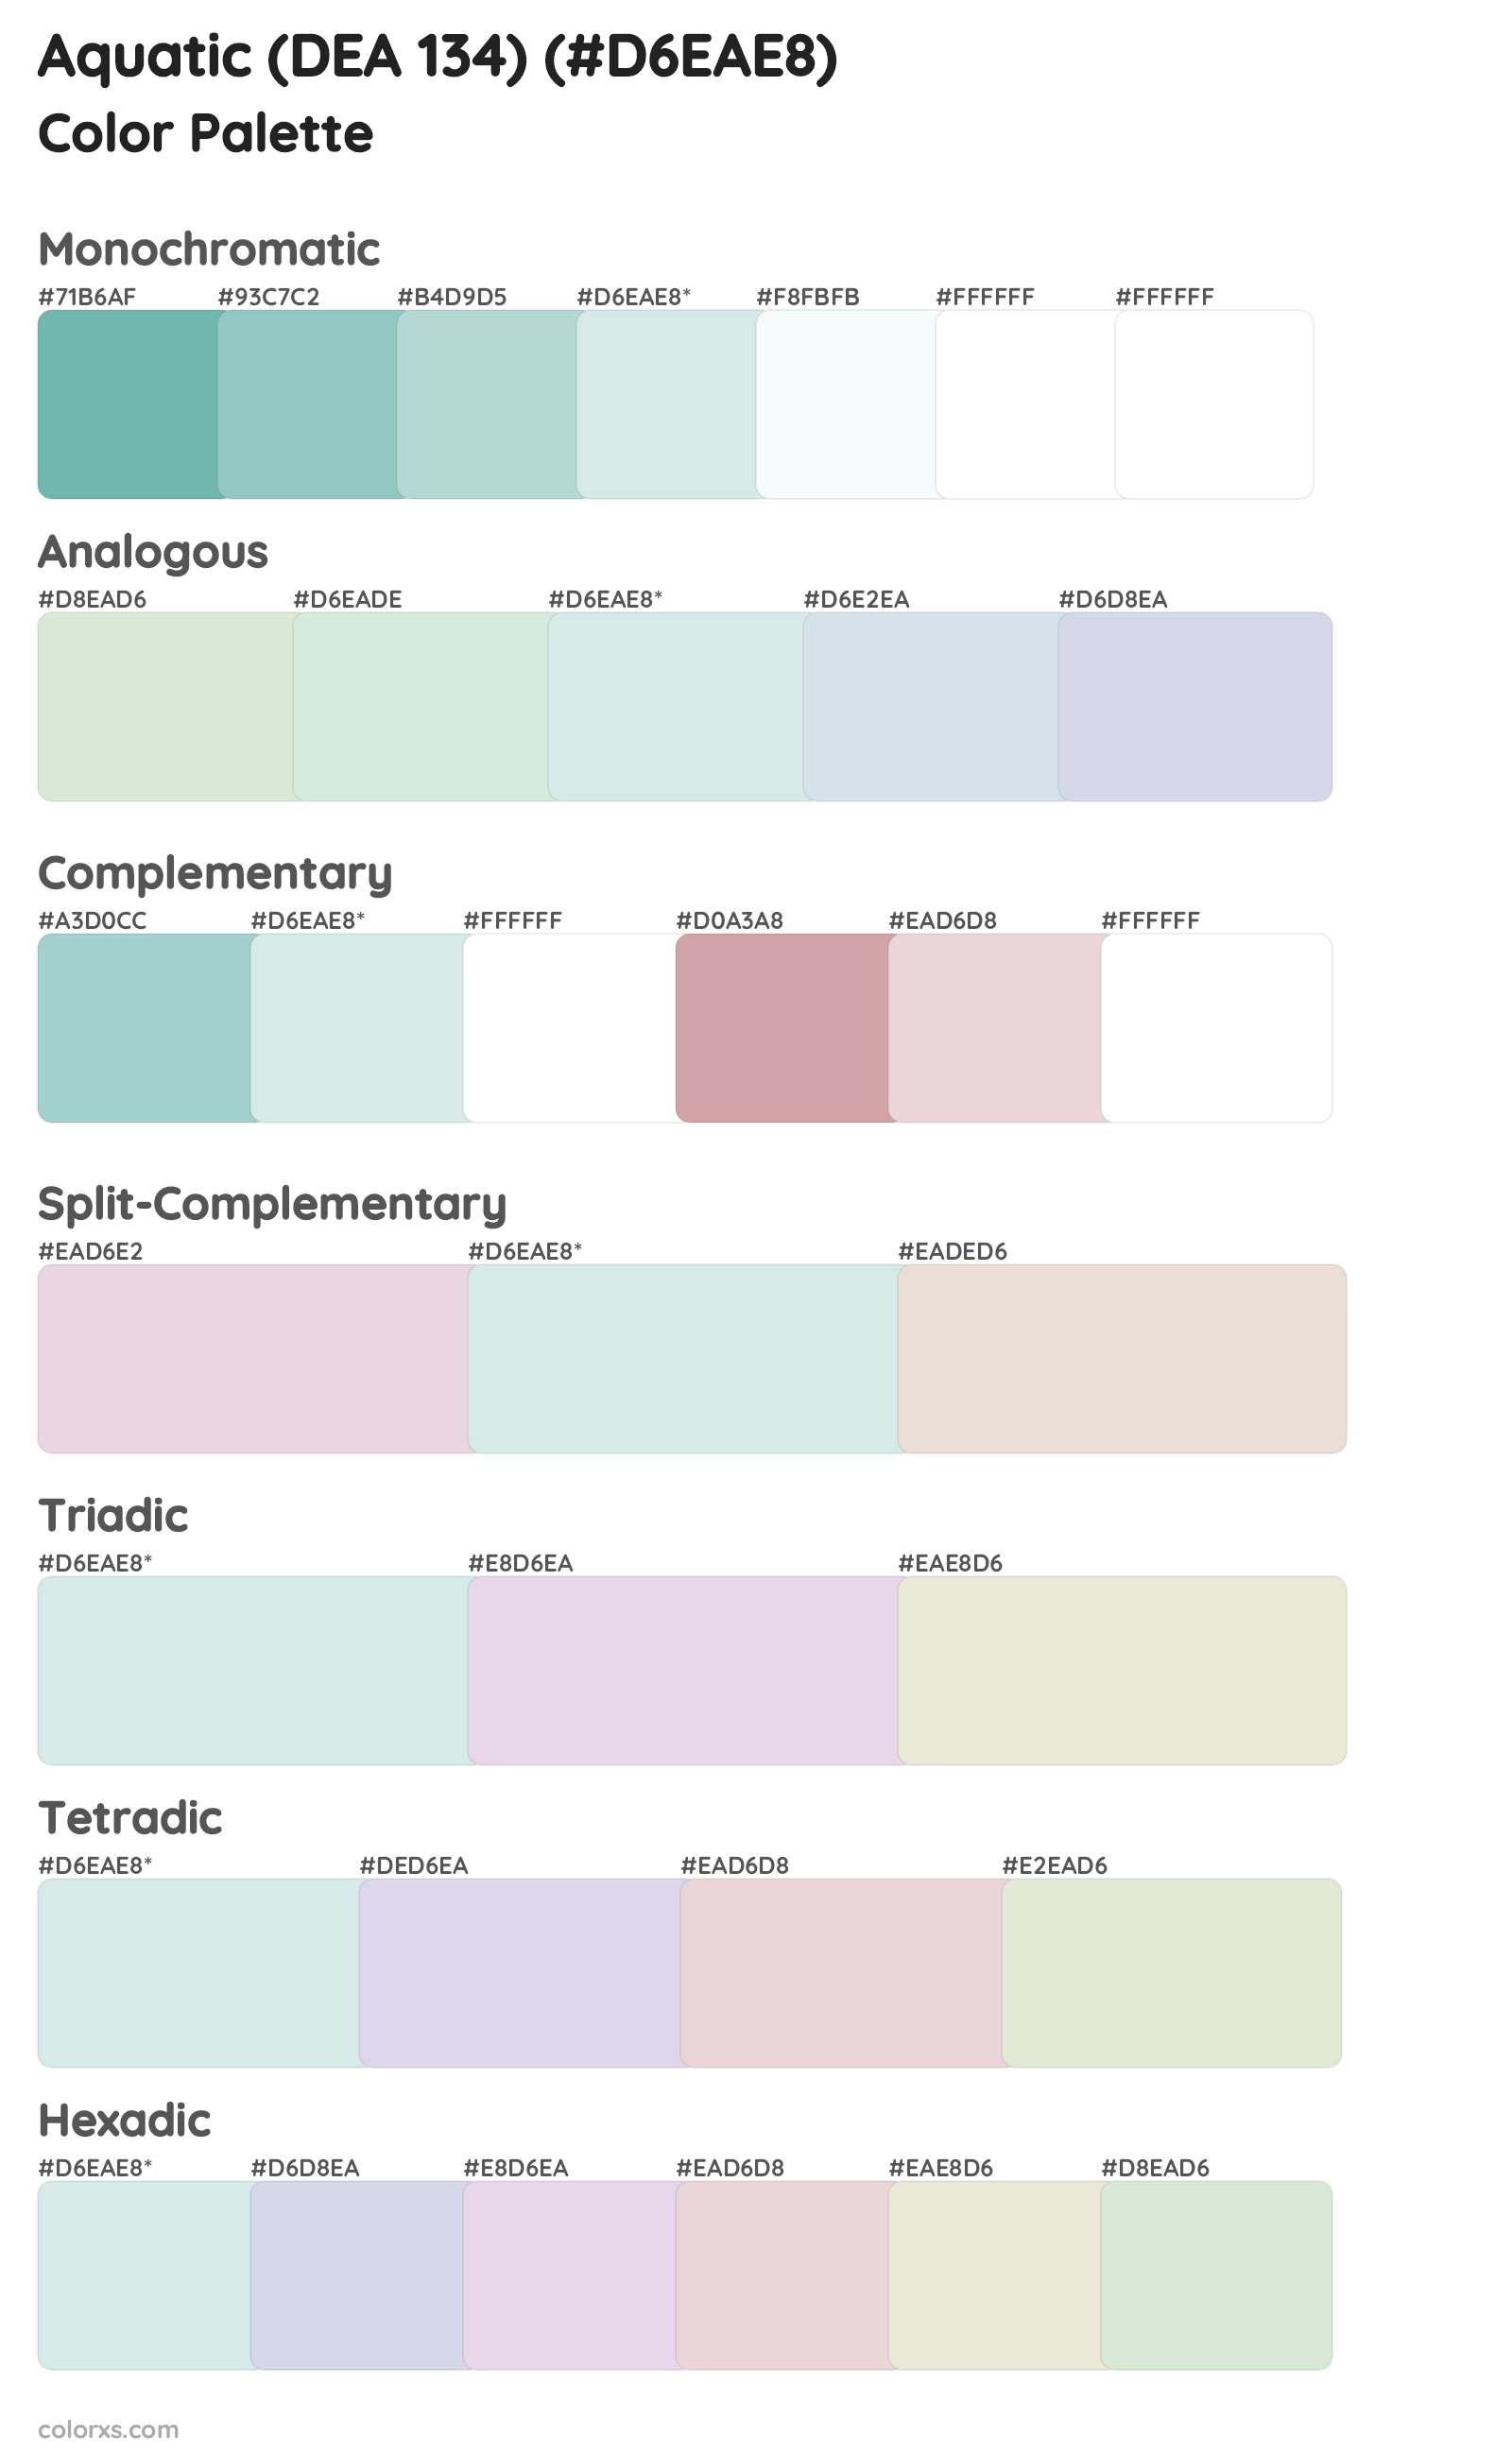 Aquatic (DEA 134) Color Scheme Palettes